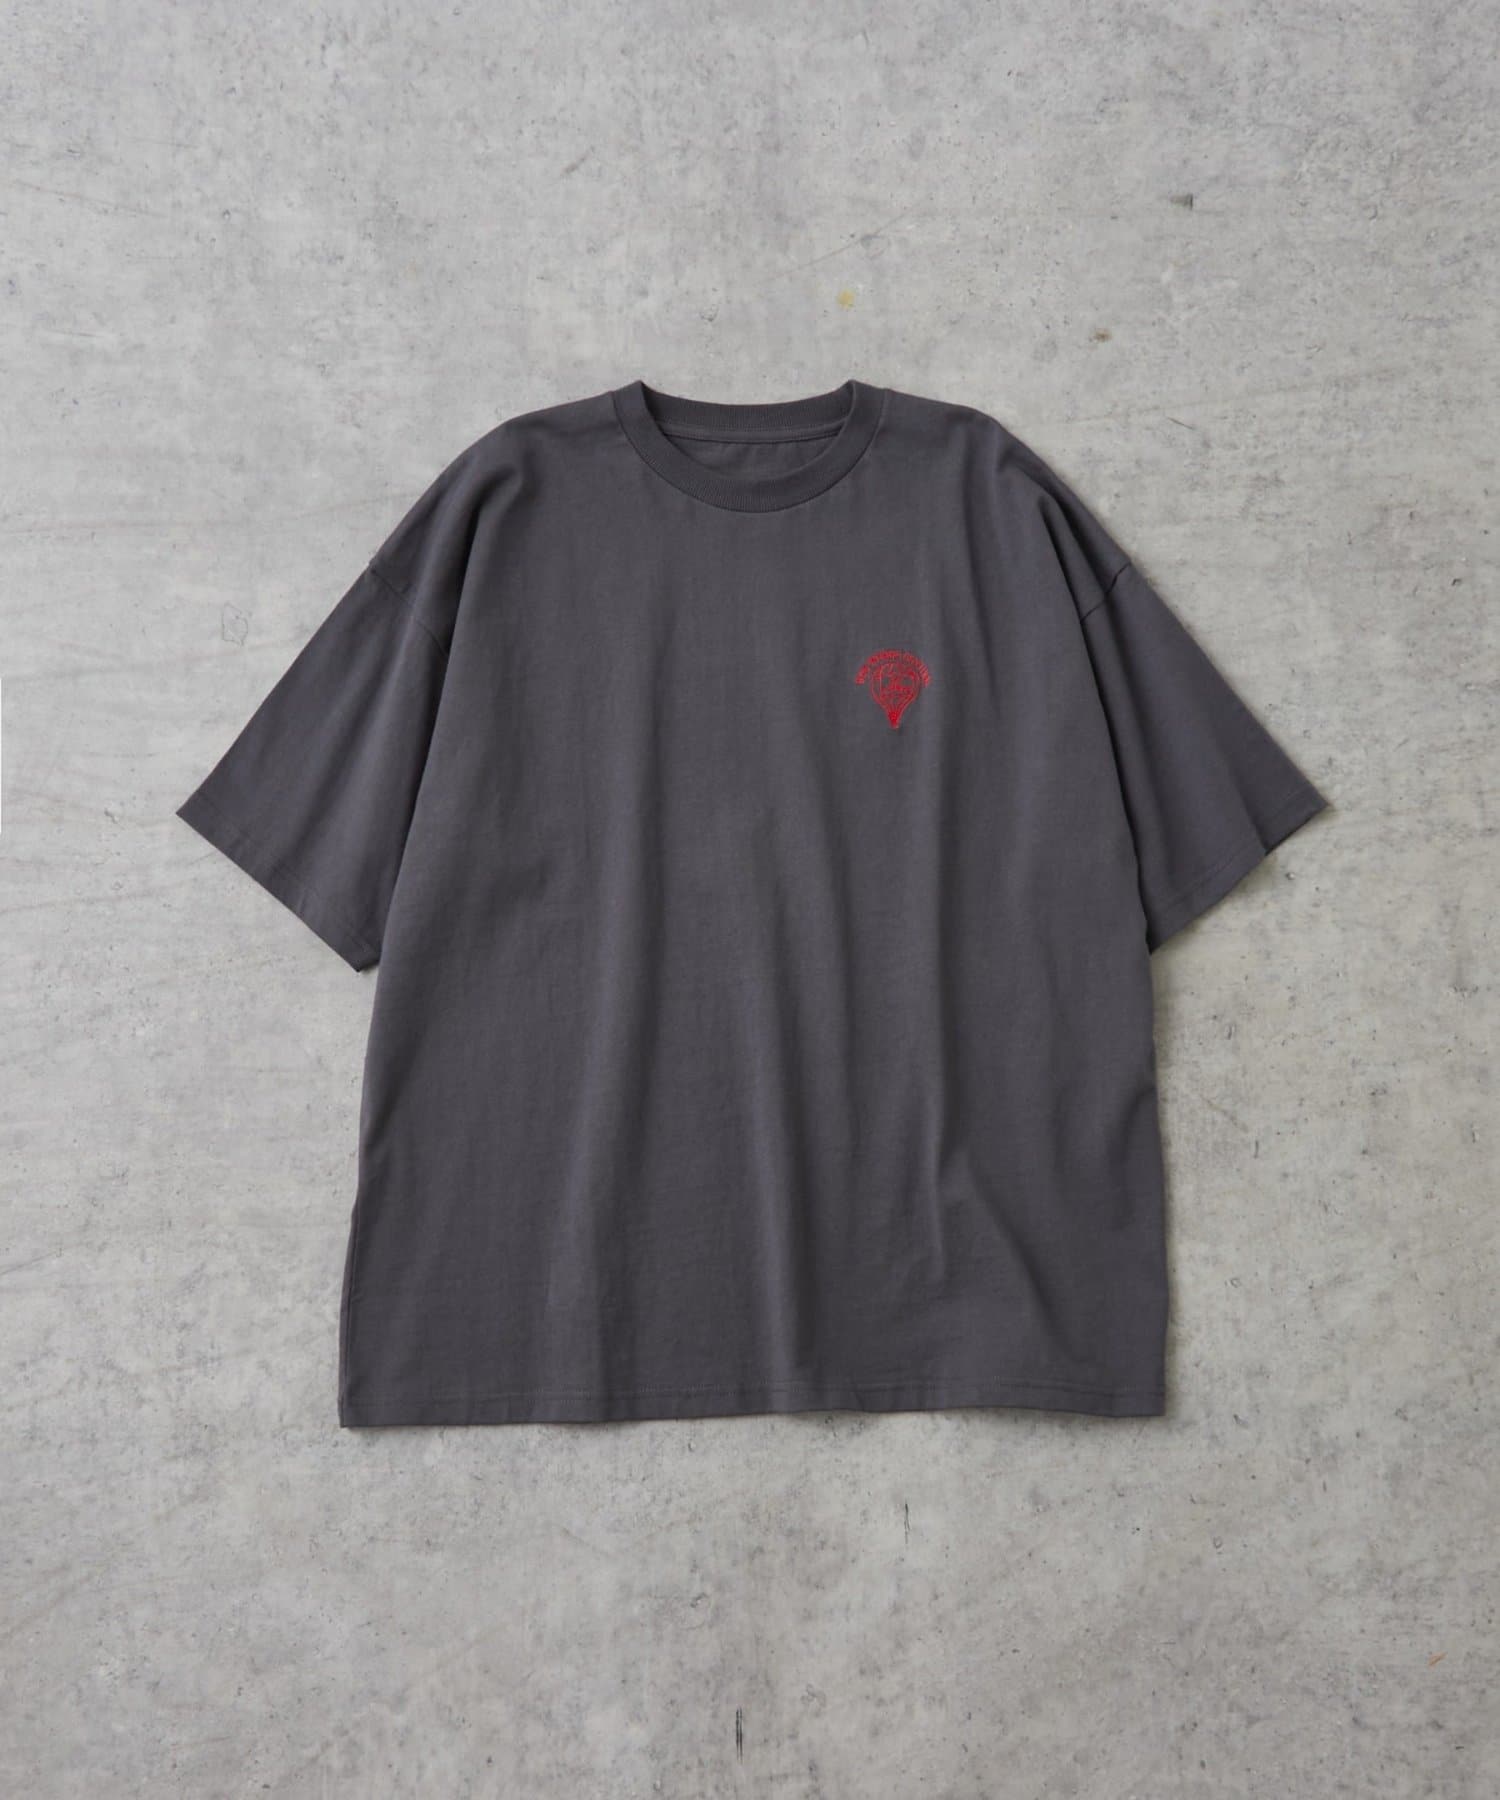 DISCOAT(ディスコート) 【WEB限定】ワンポイント刺繍半袖Tシャツ《ユニセックス》